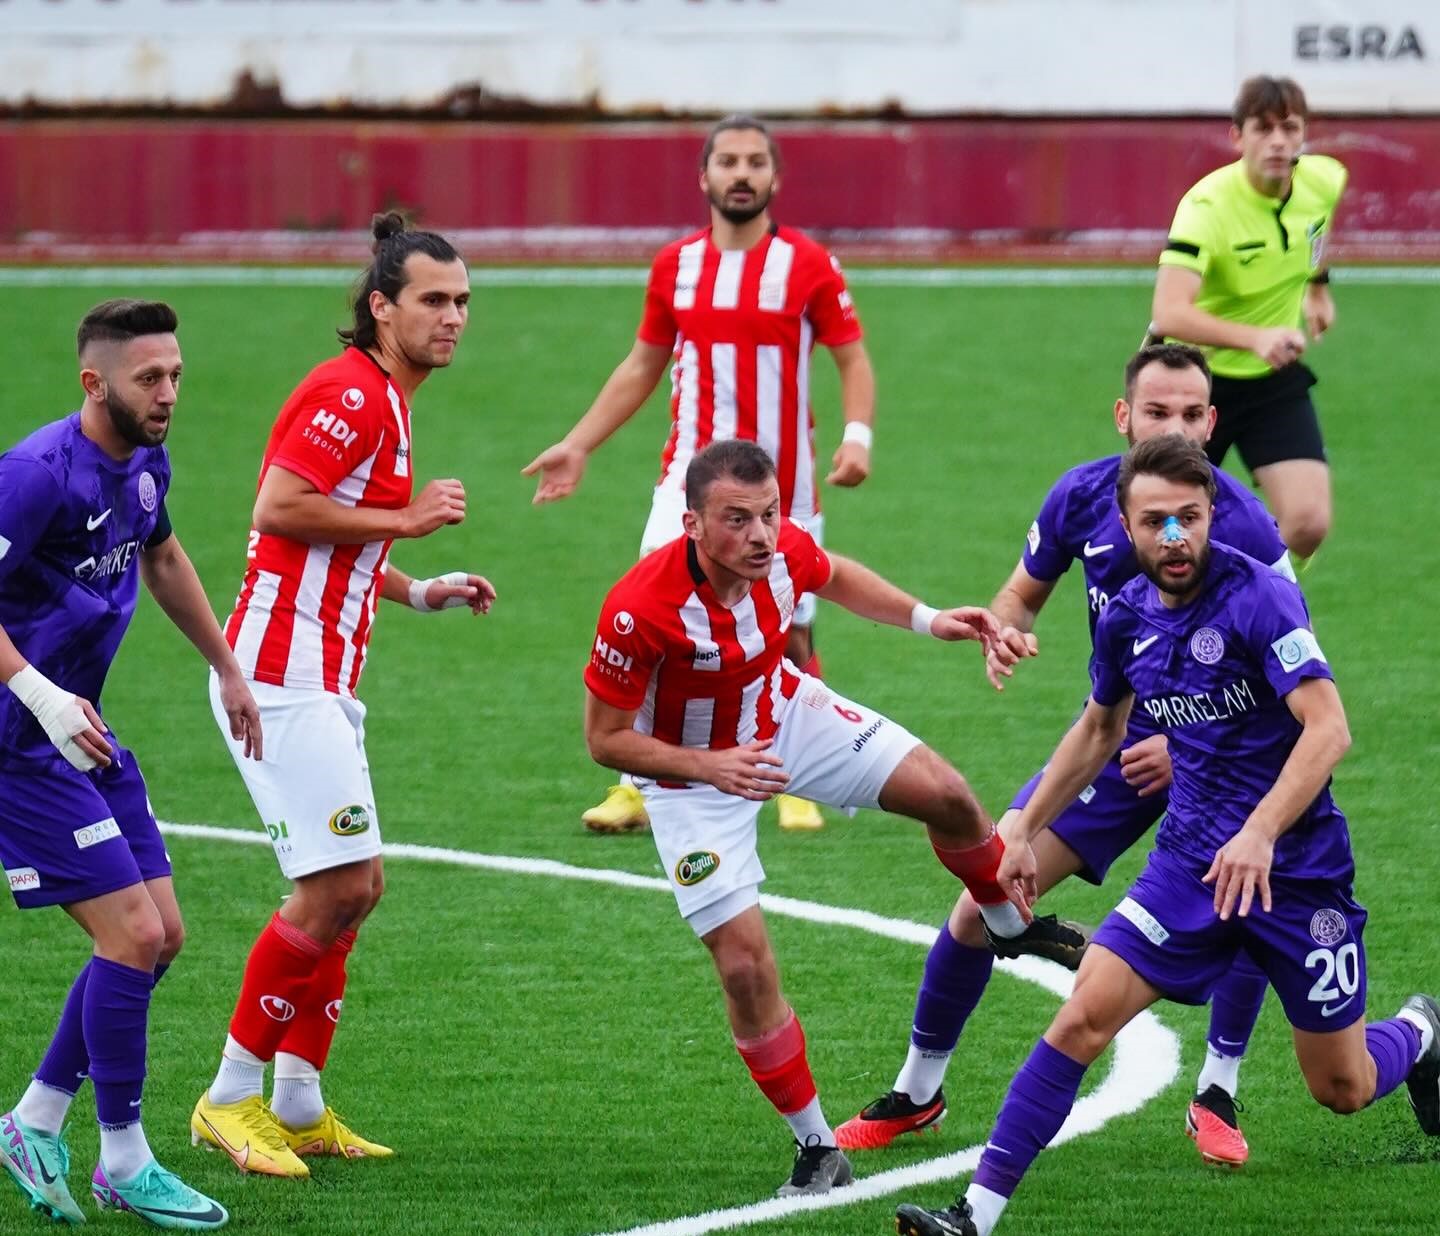  52 Orduspor Futbol Kulübü, Ayvalıkgücü Belediyespor’u İki Maçta da Yendi